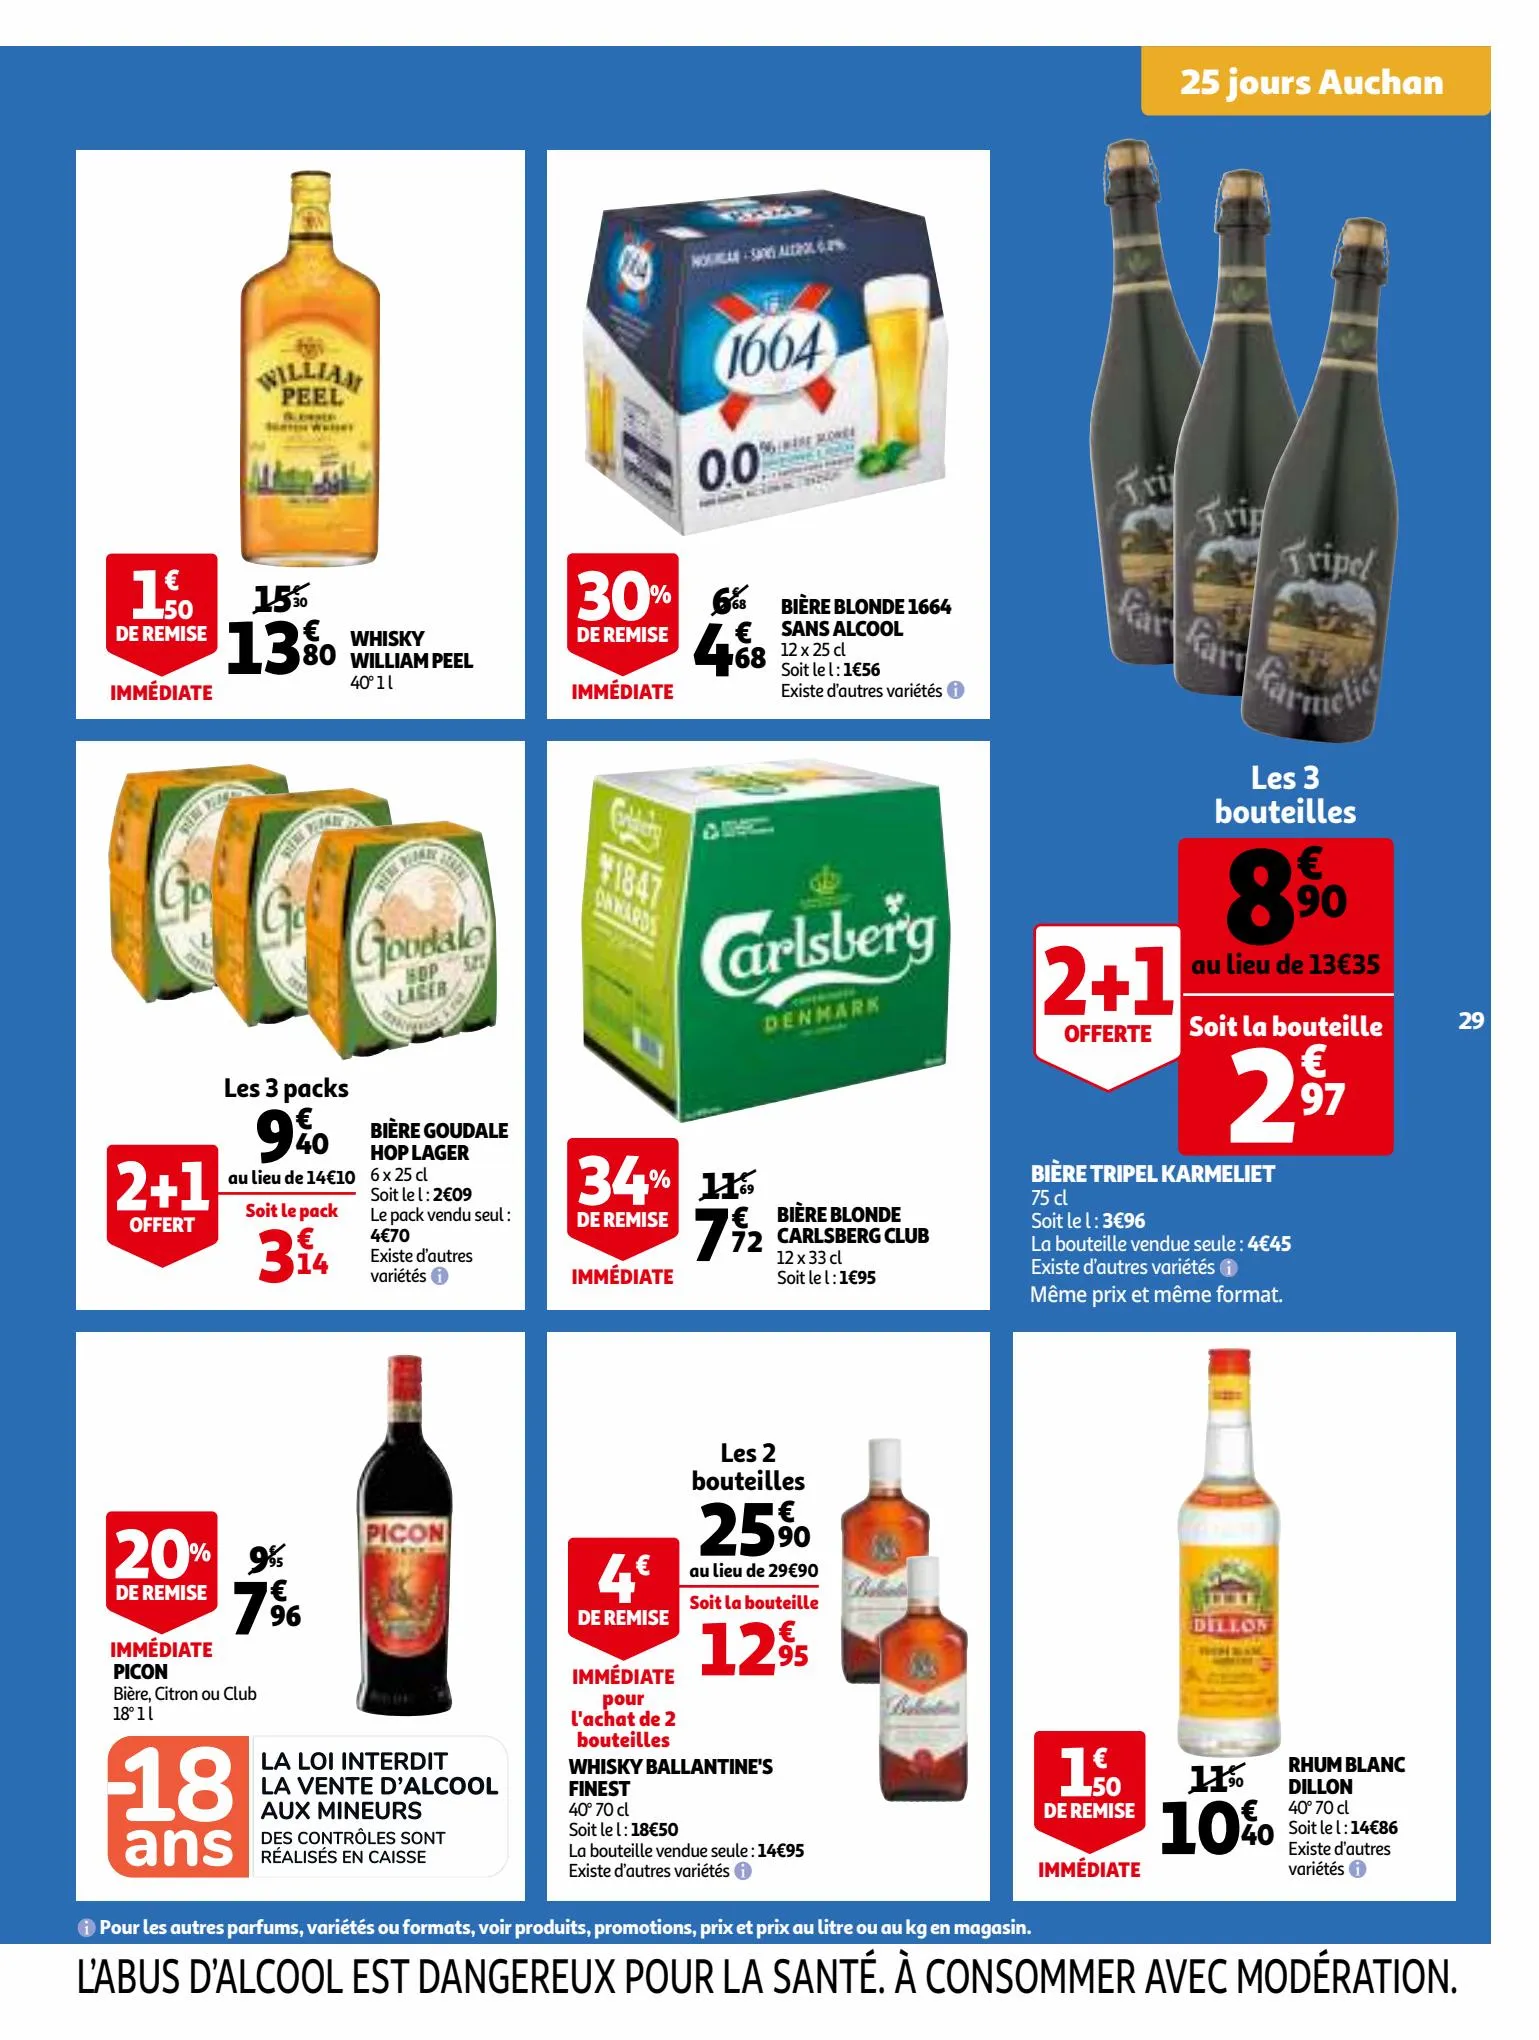 Catalogue 25 Jours Auchan, page 00029